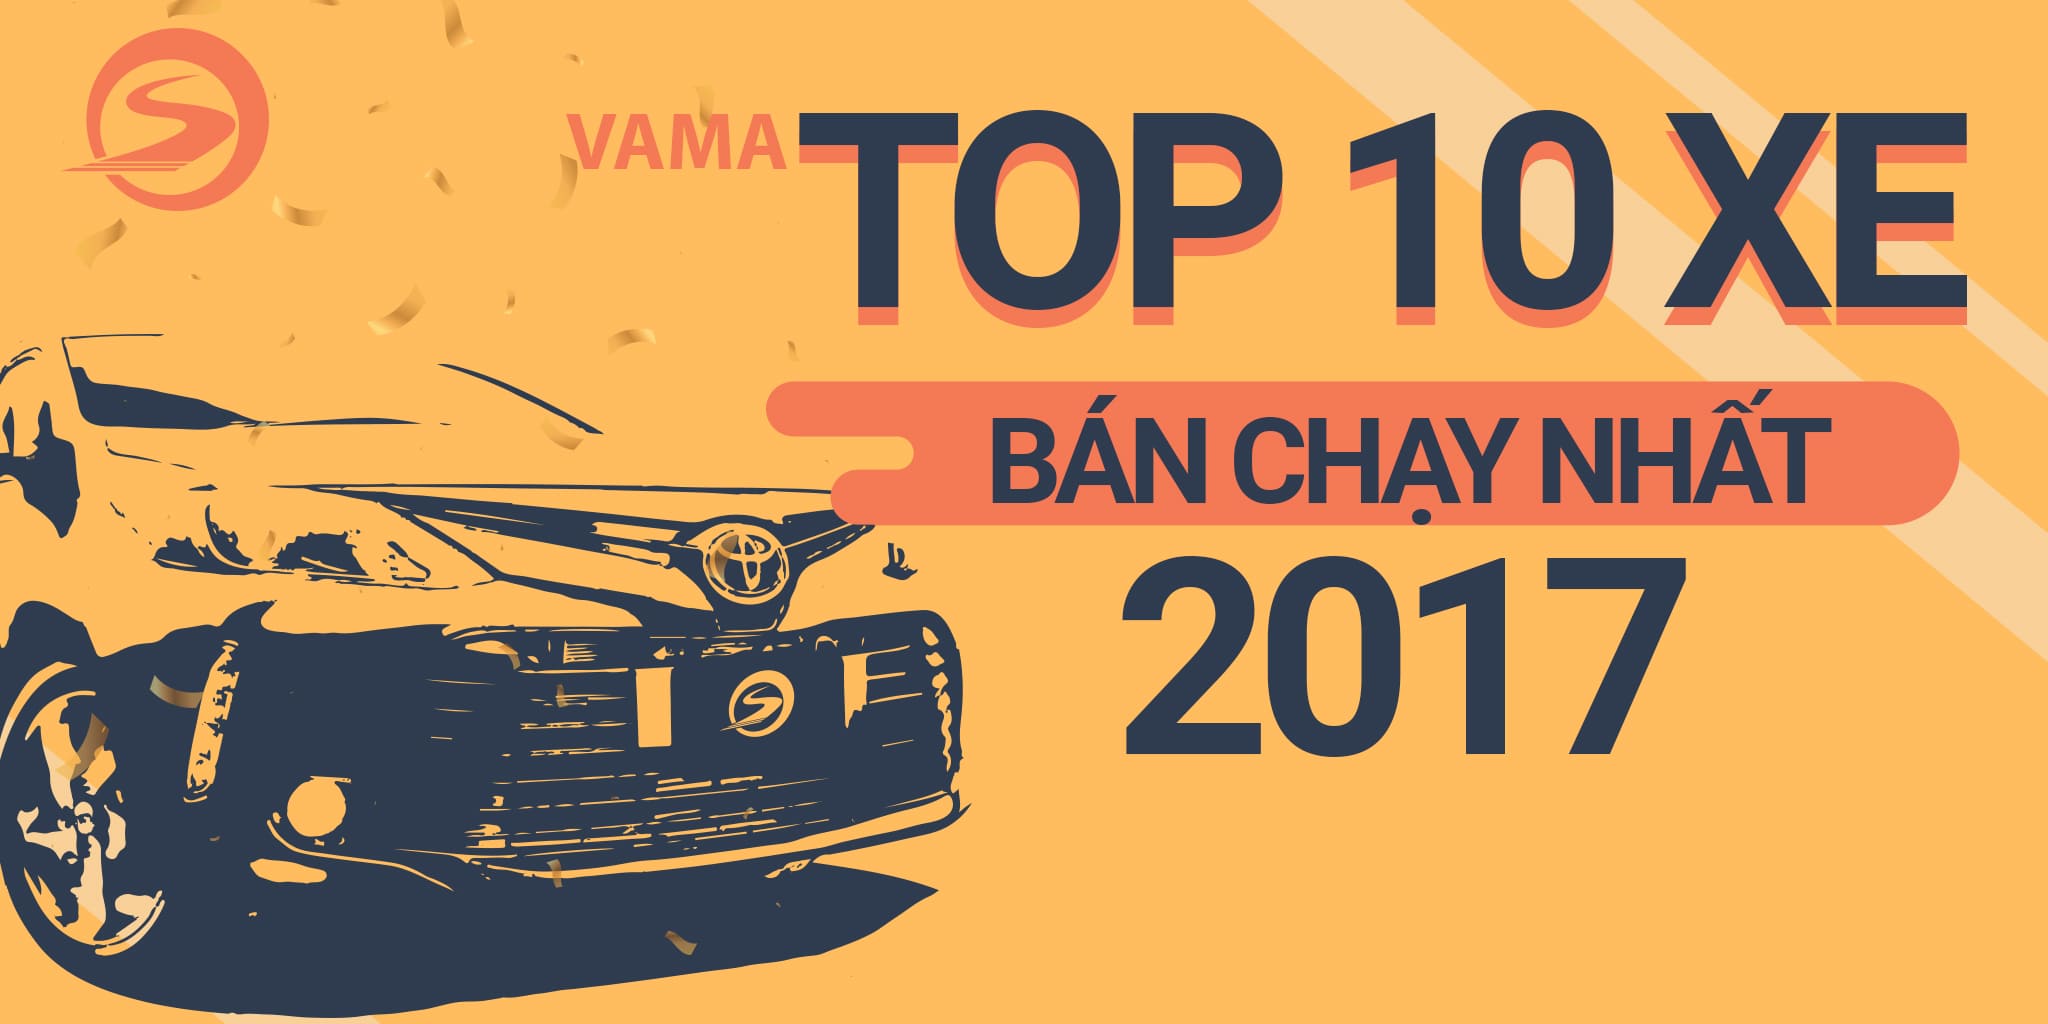 10 mẫu xe ô tô bán chạy nhất Việt Nam năm 2017